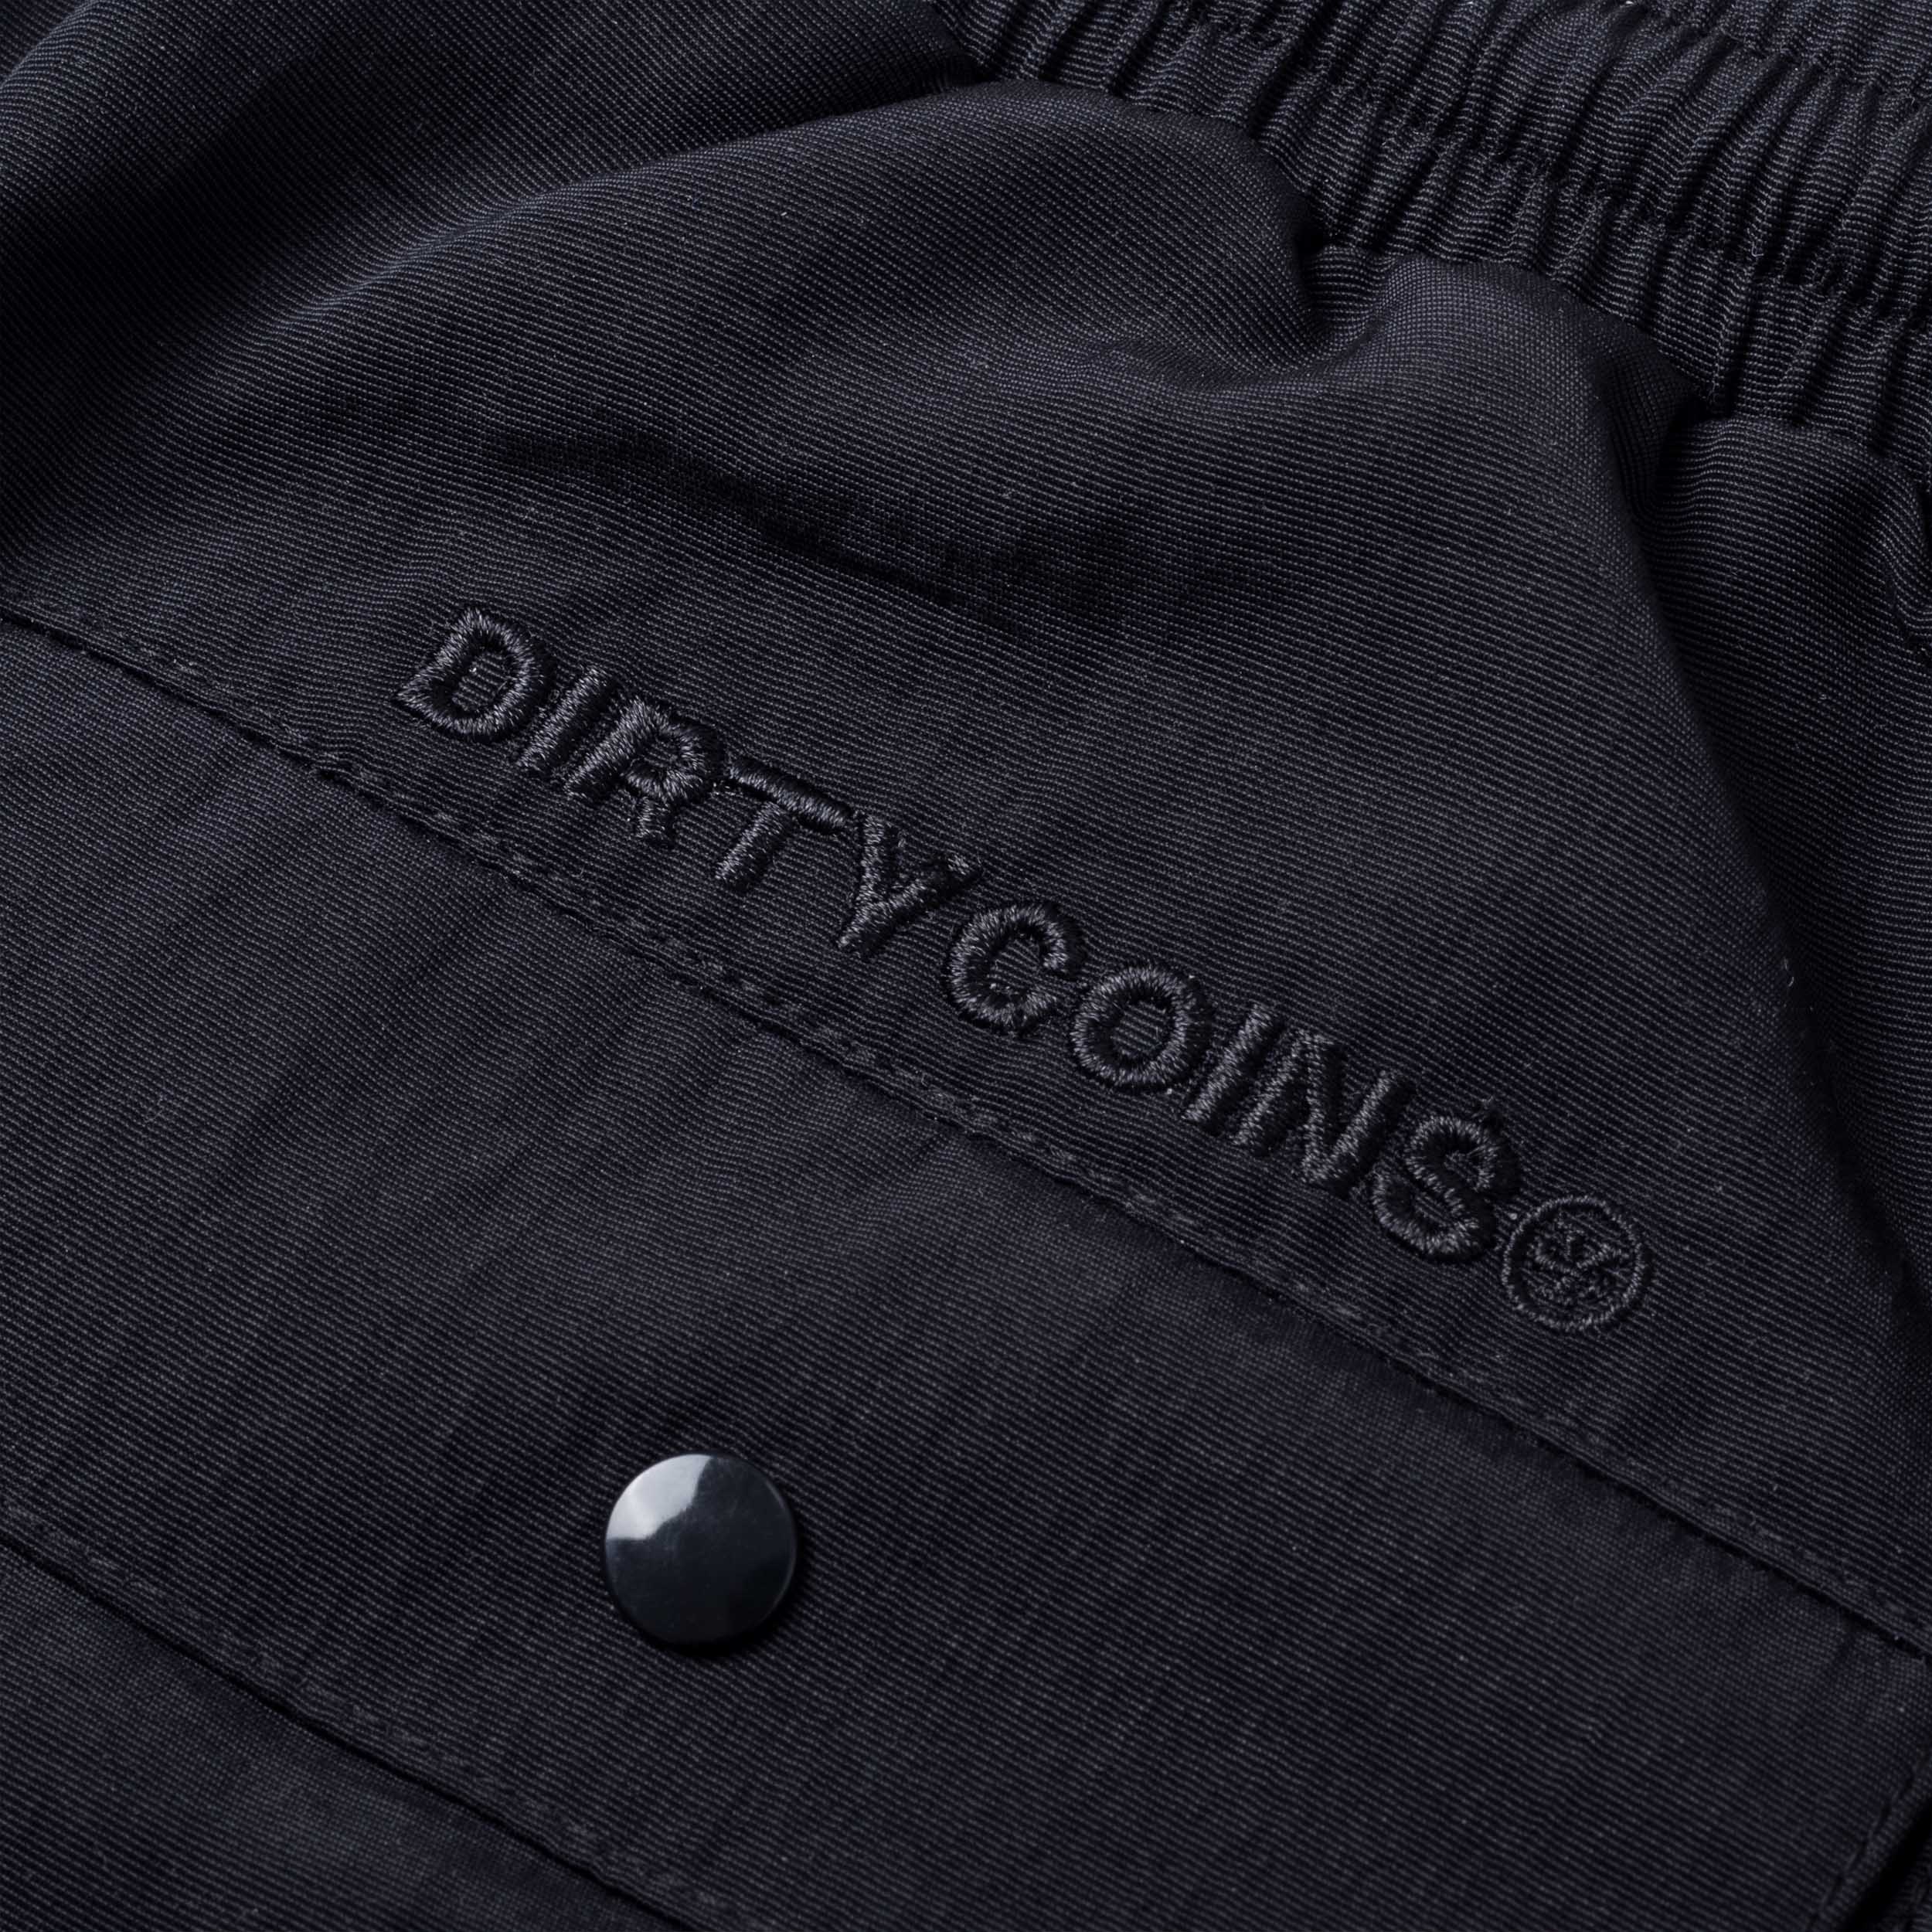 DirtyCoins x LilWuyn Dico Burn Short - Black